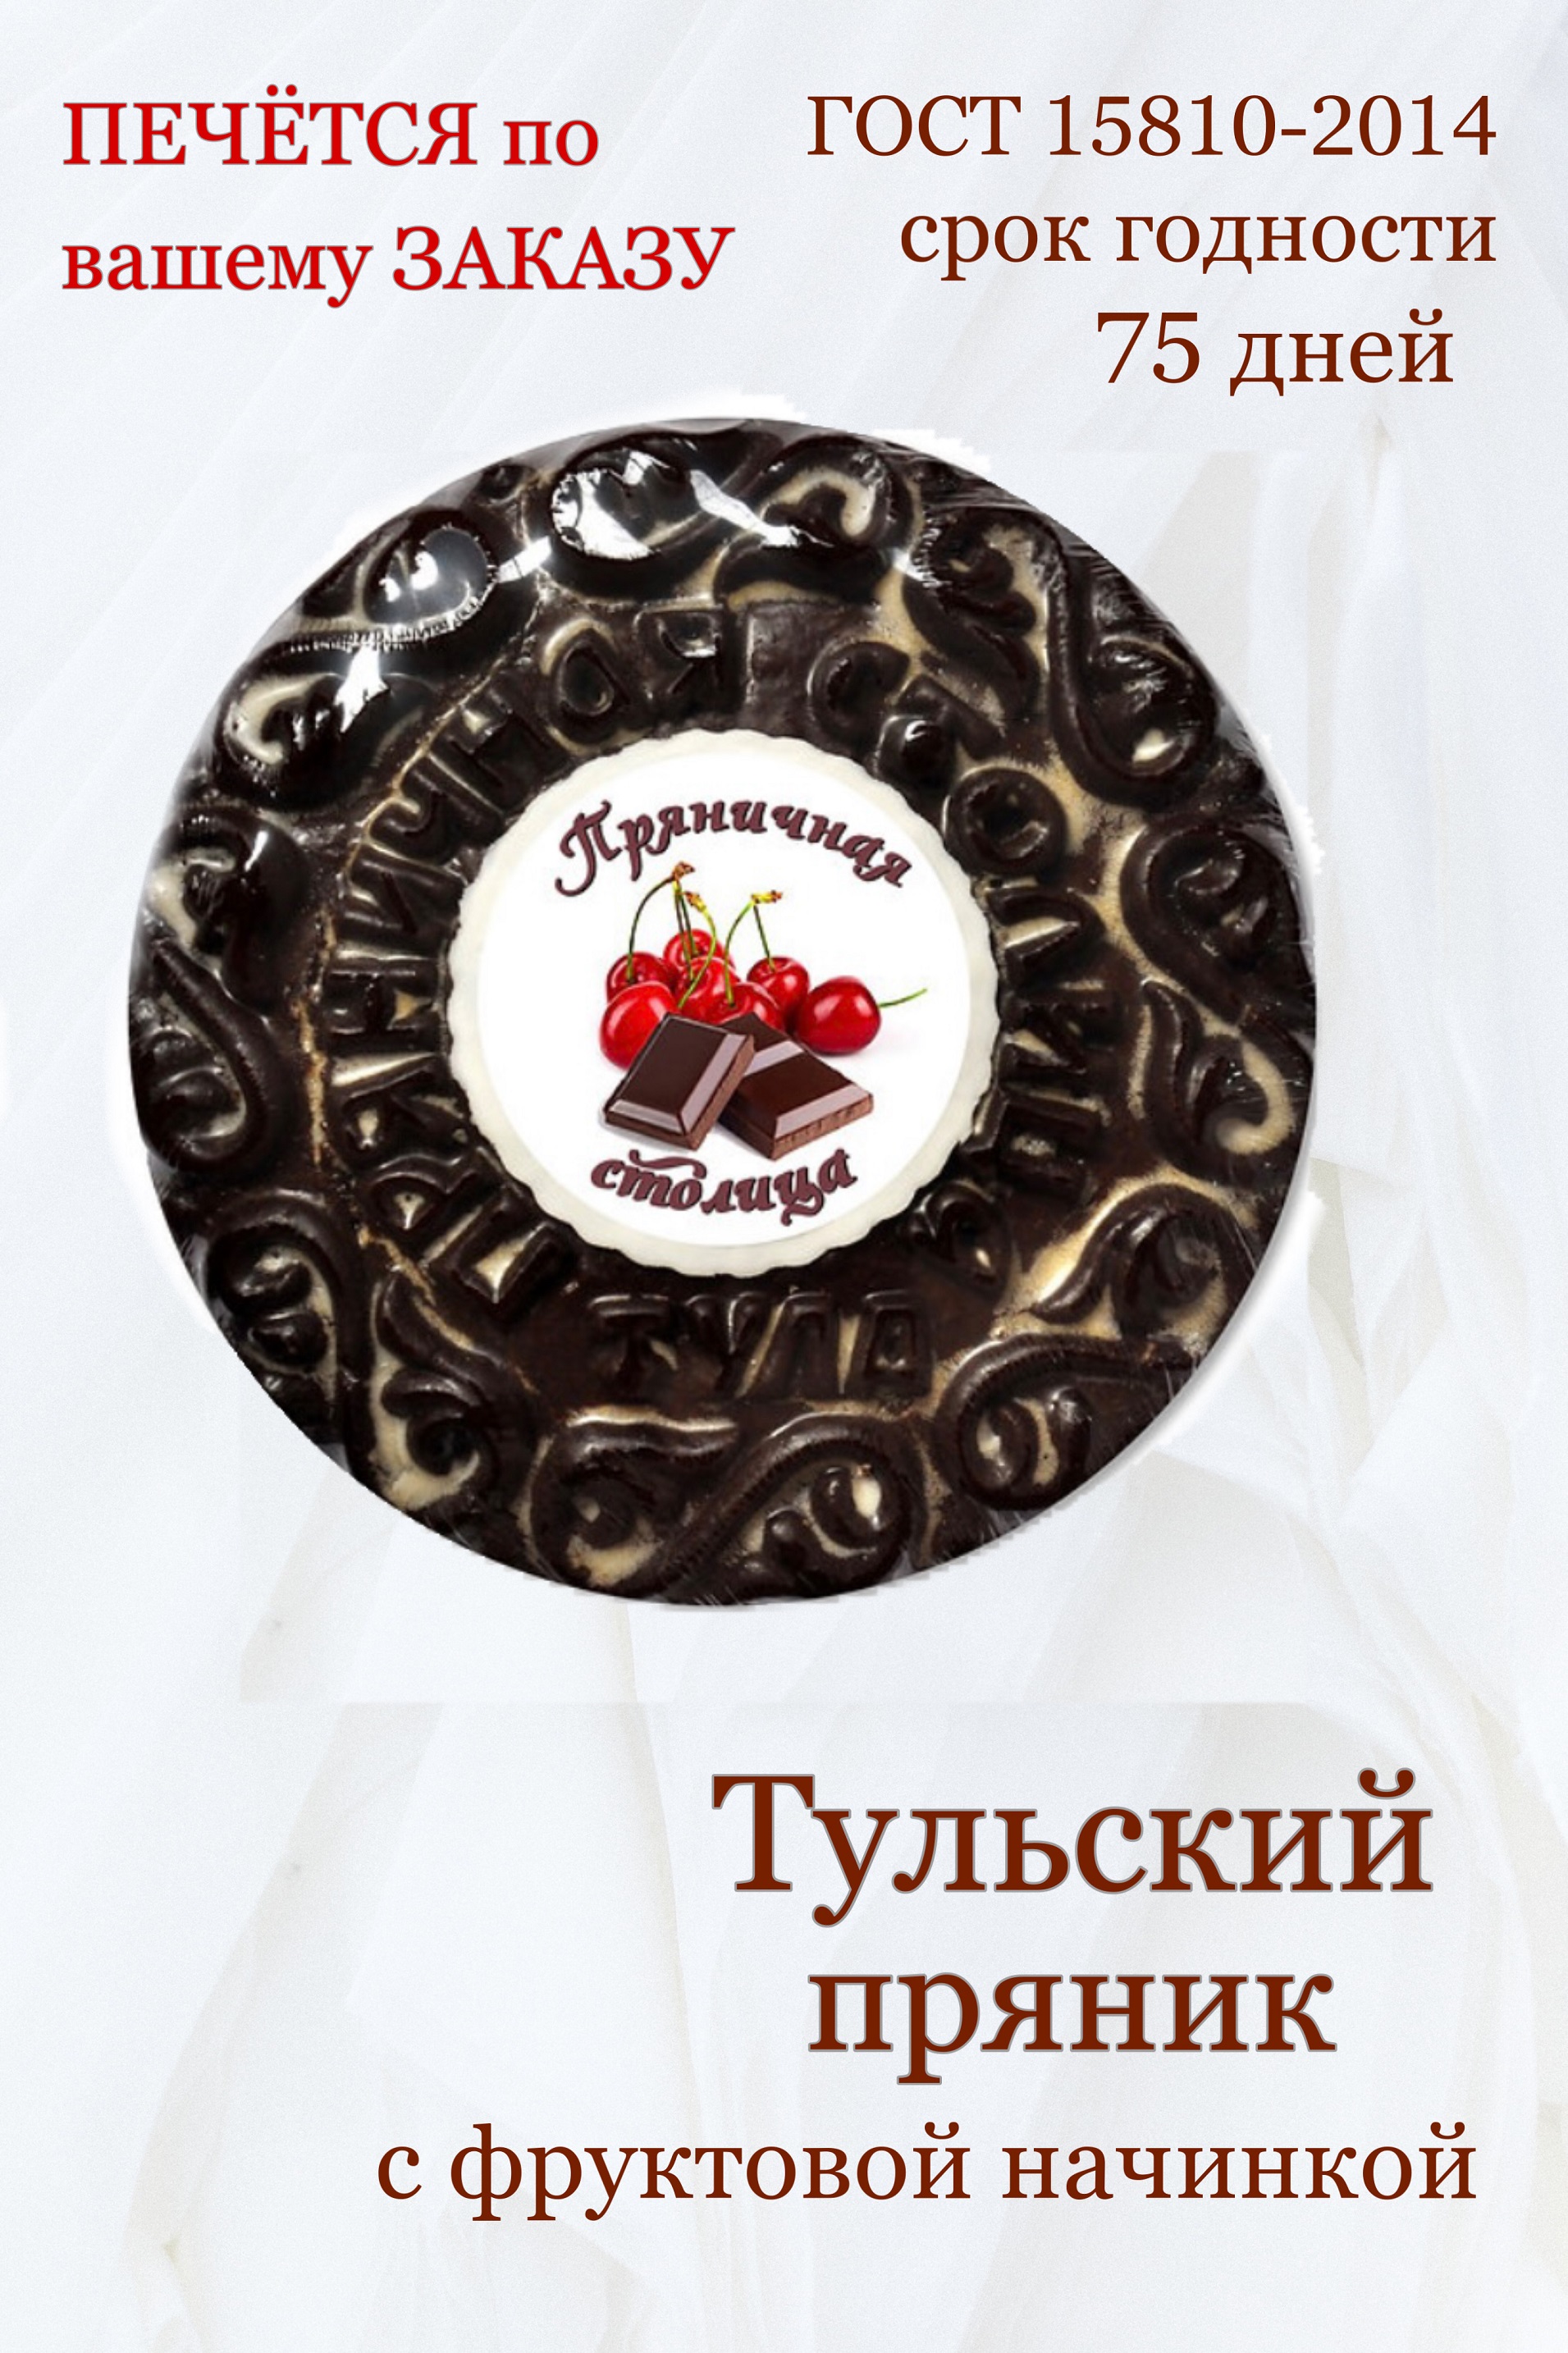 Пряники глазированные Пряничная столица шоколадные с начинкой со вкусом вишни, 700 г